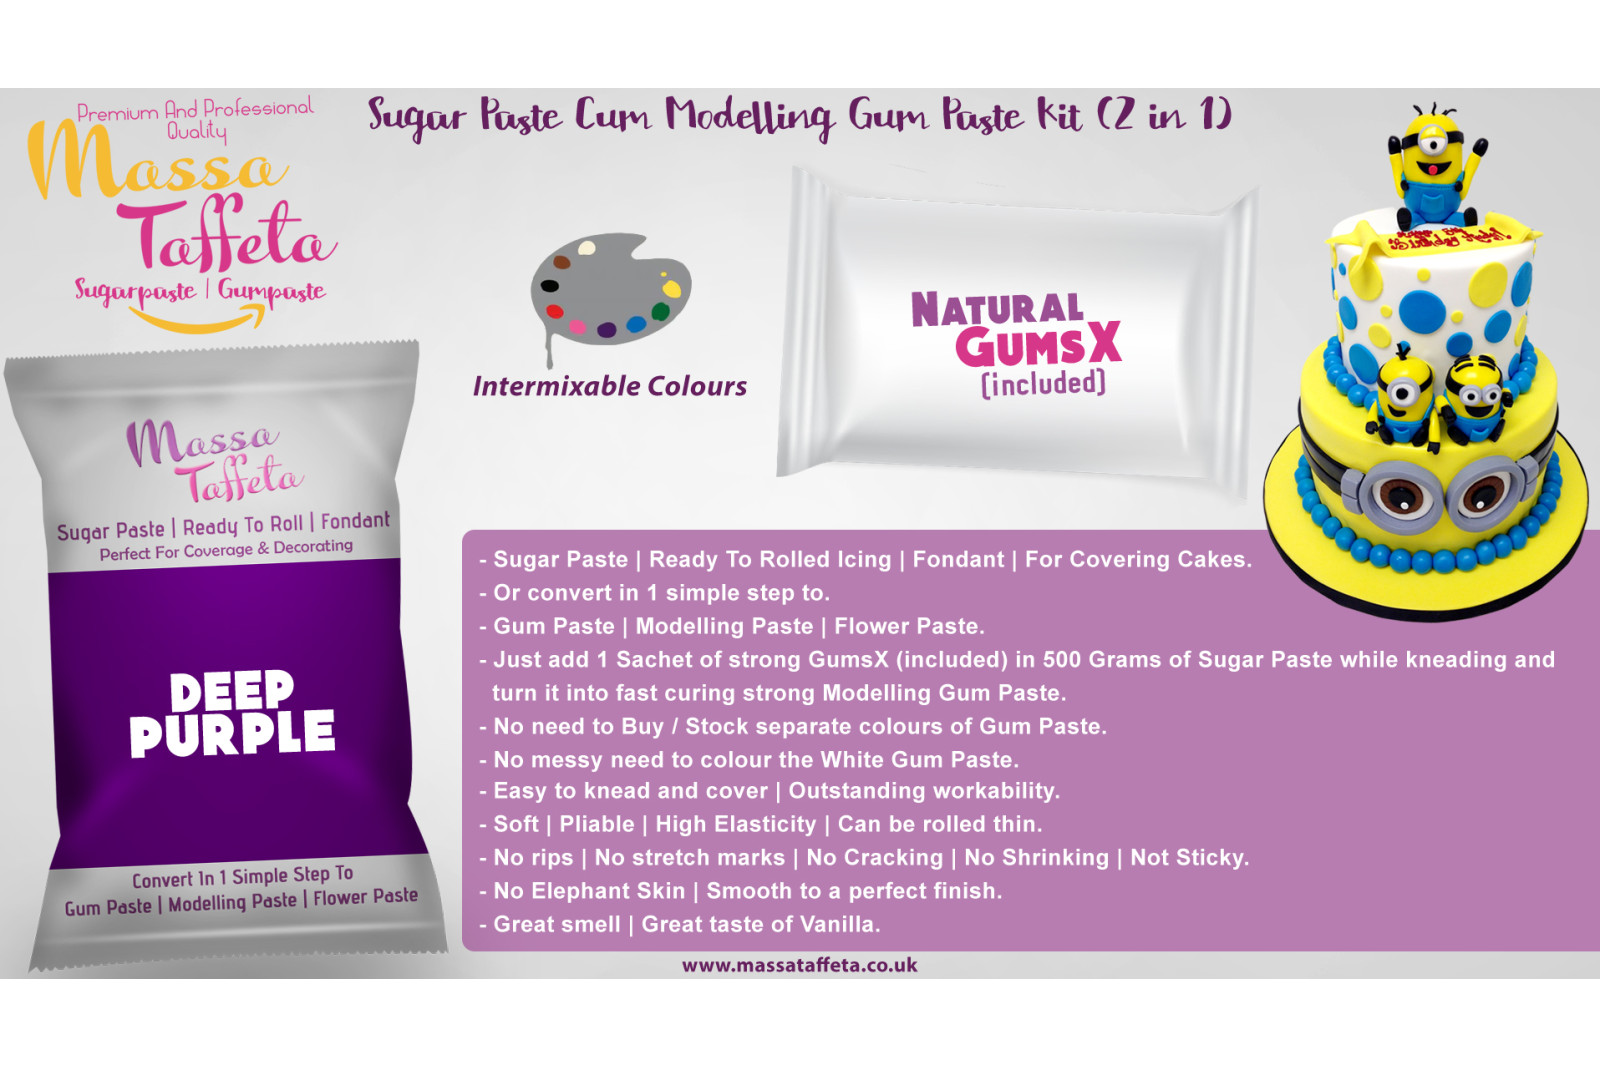 Deep Purple | Massa Taffeta | Sugar Paste Cum Modelling Gum Paste Kit (2 in 1)